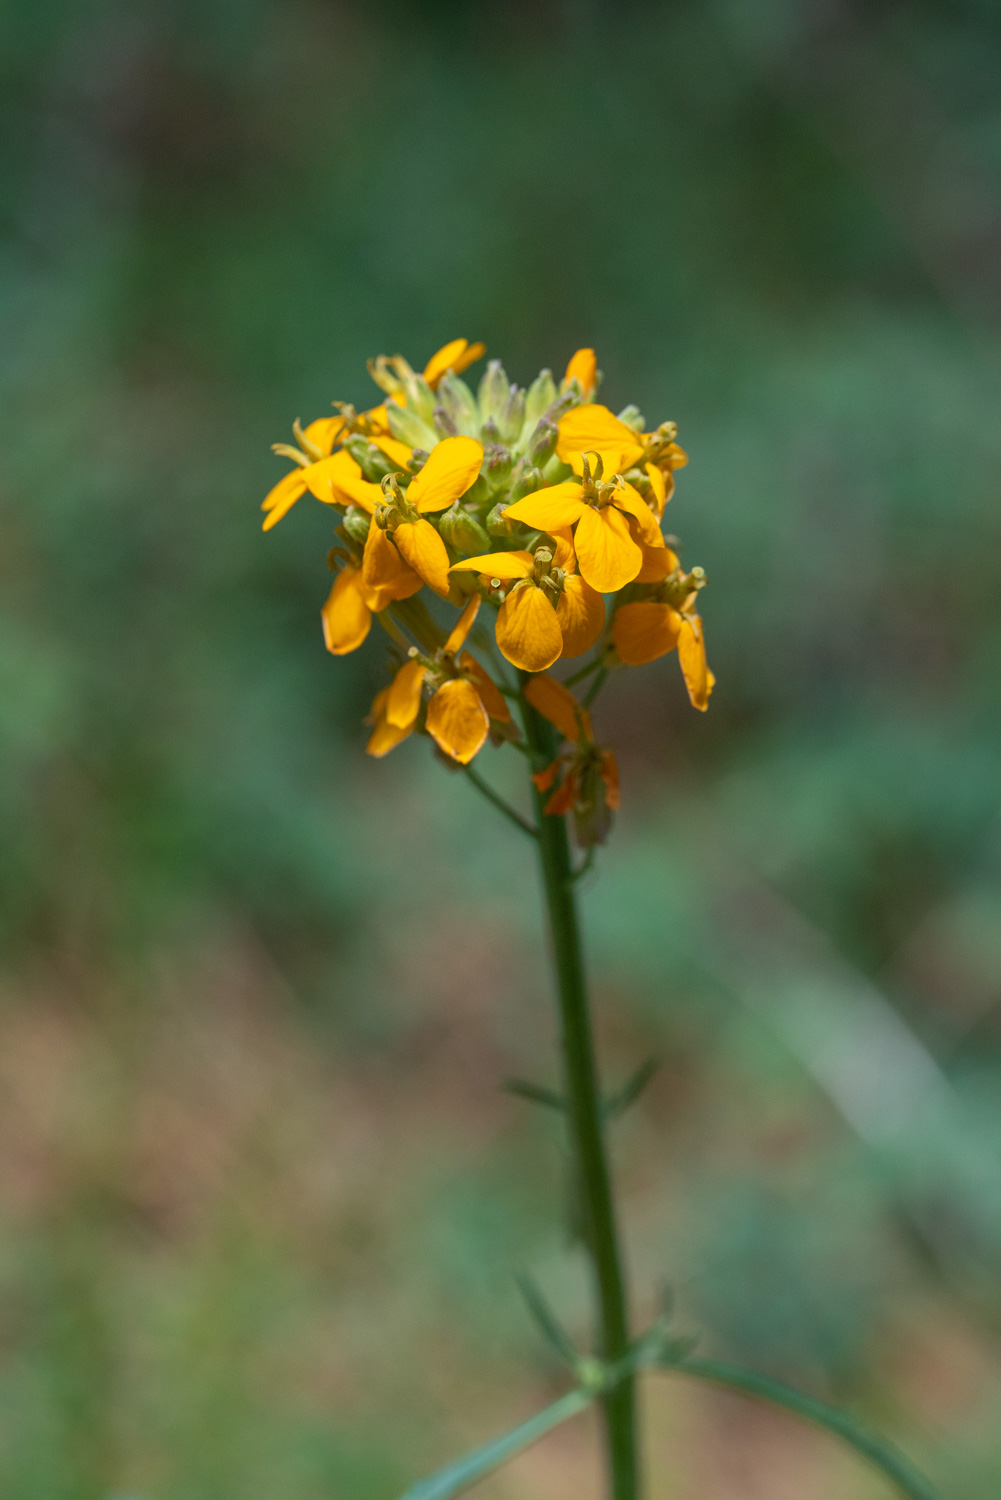 Wallflower (Erysium capitatum)